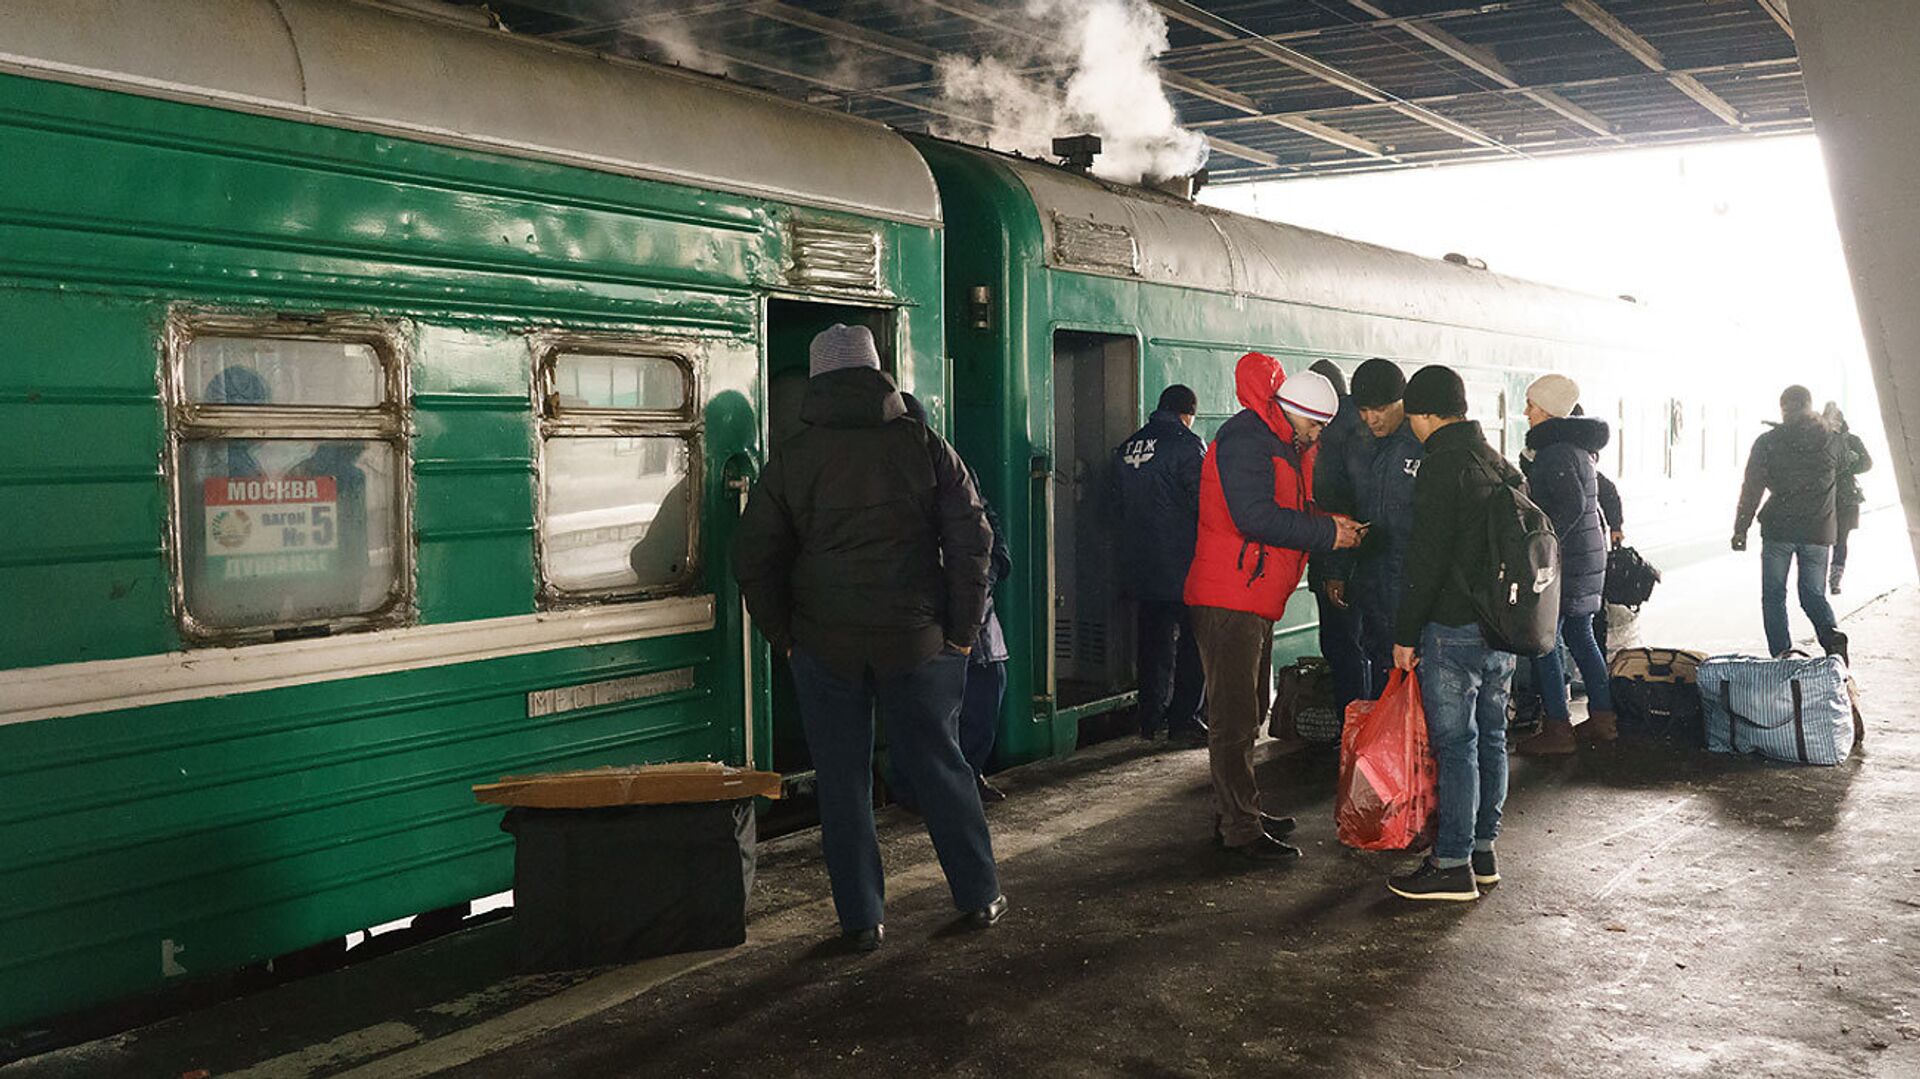 Посадка пассажиров в поезд Москва-Душанбе - Sputnik Таджикистан, 1920, 18.06.2021